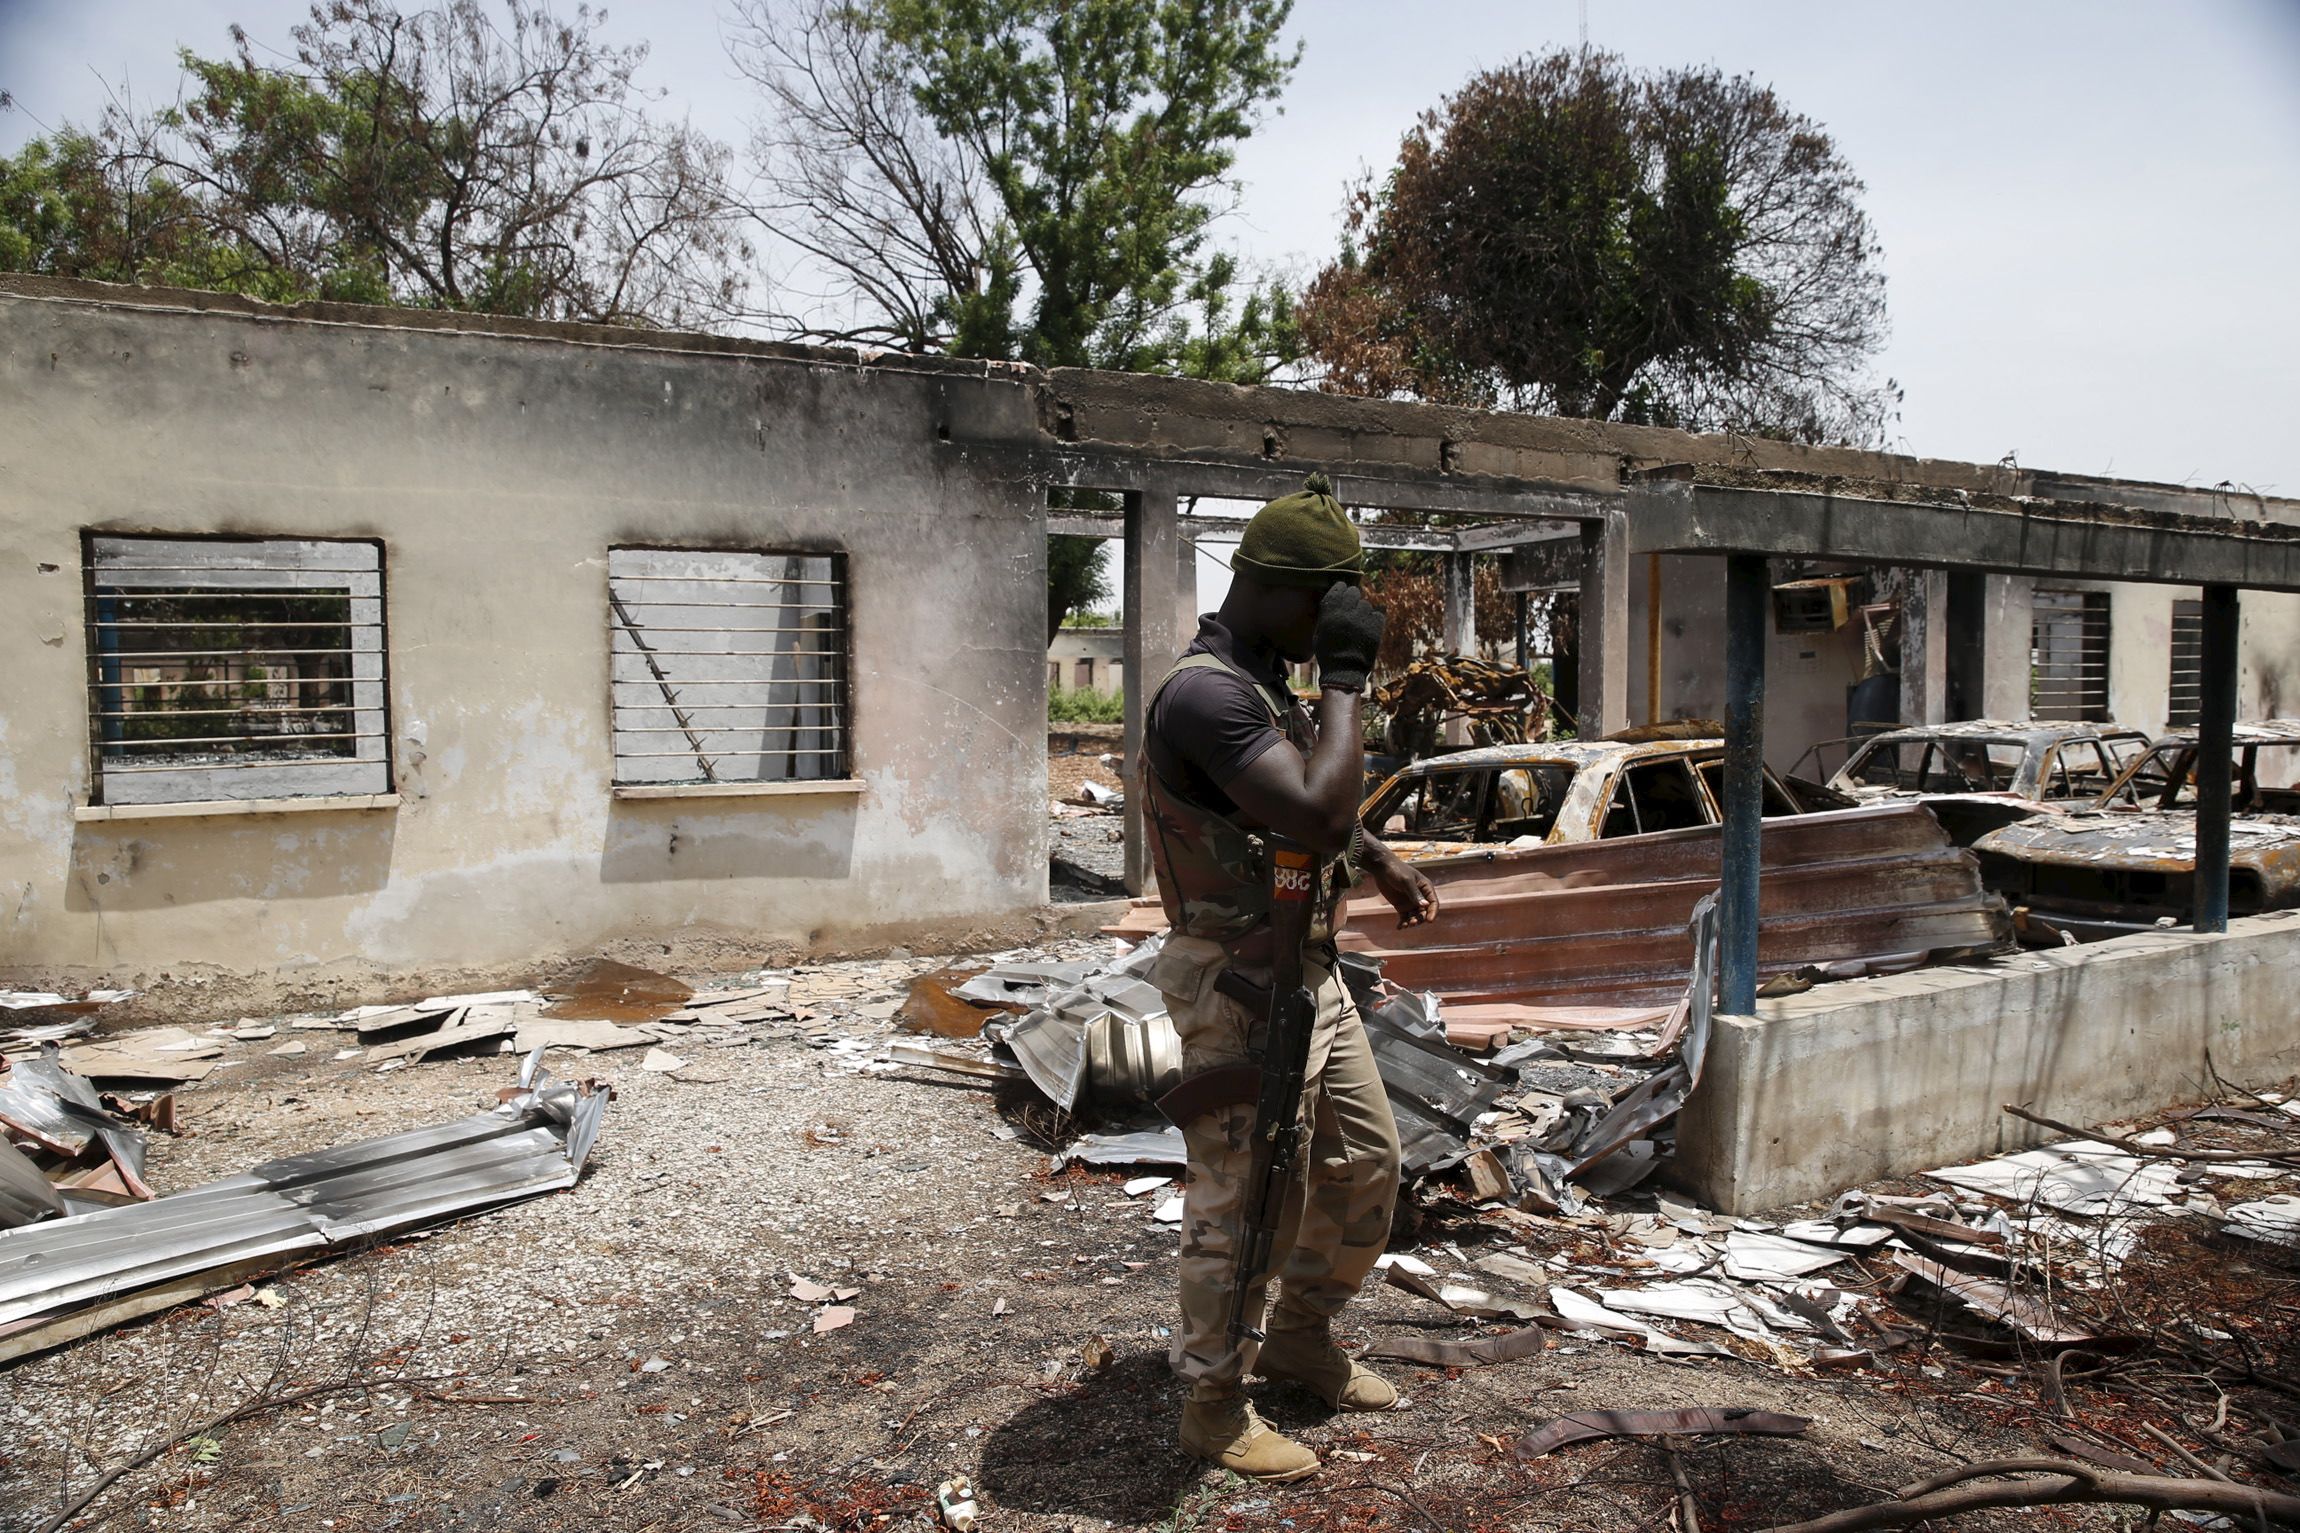 Нападение на город. Атака Боко харам в Нигерии 2014. Террористическая группировка Боко харам.